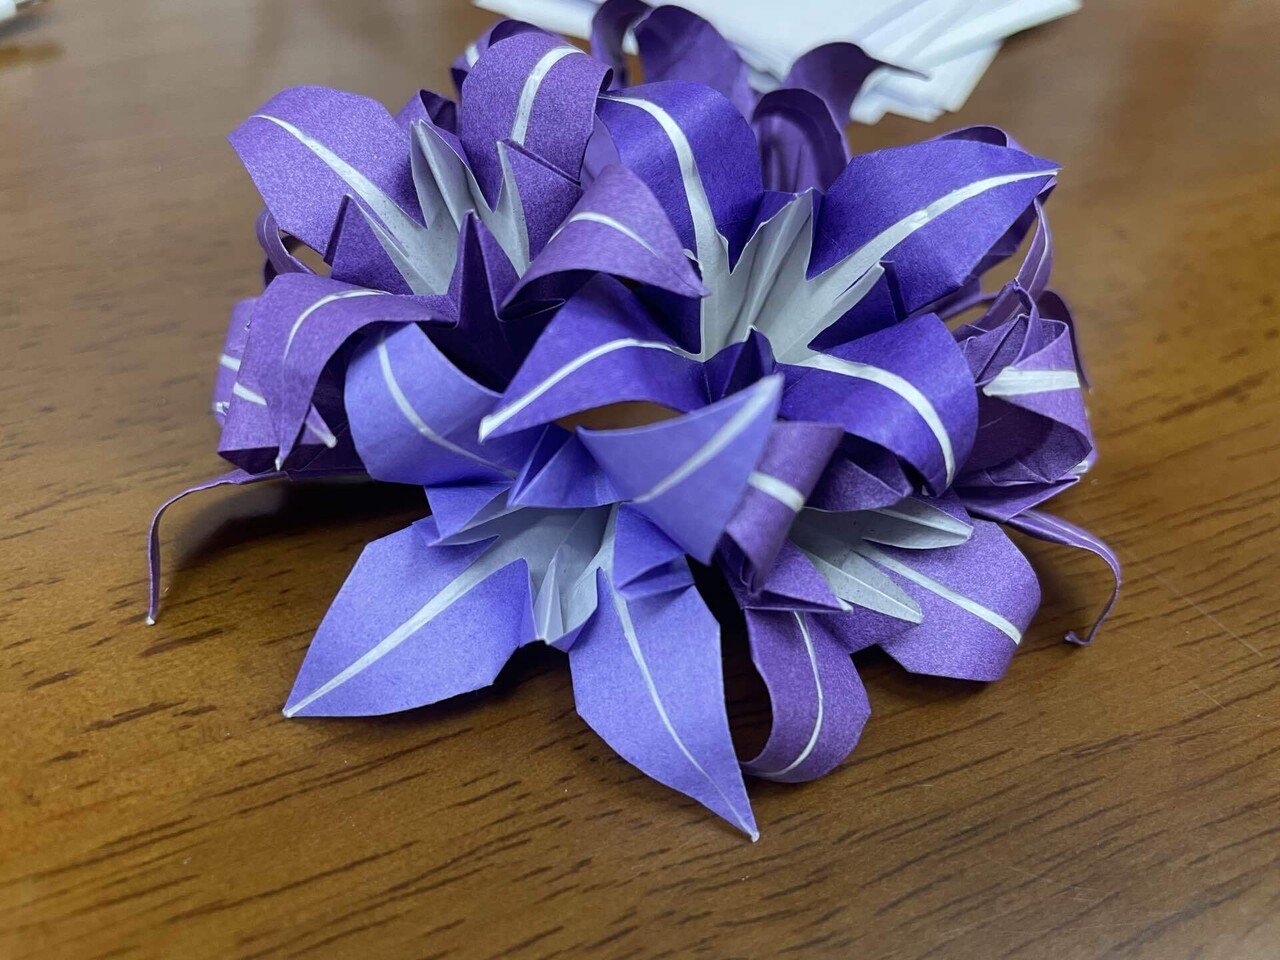 しょうぶの花のくす玉作り中 折り紙四分の1サイズで作っているからか 手先が疲れる 完成まで頑張る みーくん Note